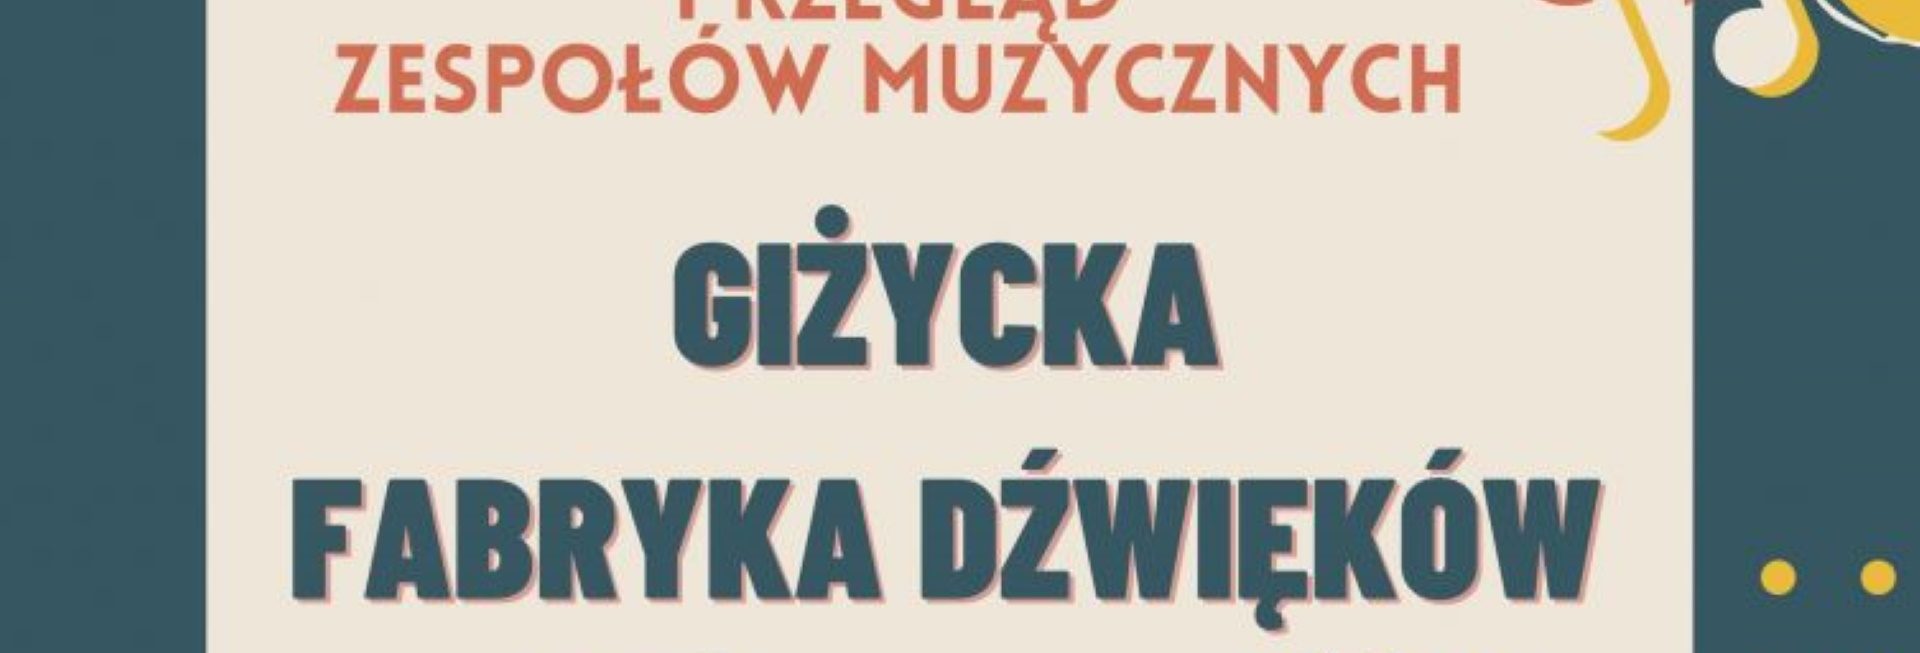 Plakat graficzny zapraszający do Giżycka na Ogólnopolski Przegląd Zespołów Muzycznych Giżycka Fabryka Dźwięków 2021.